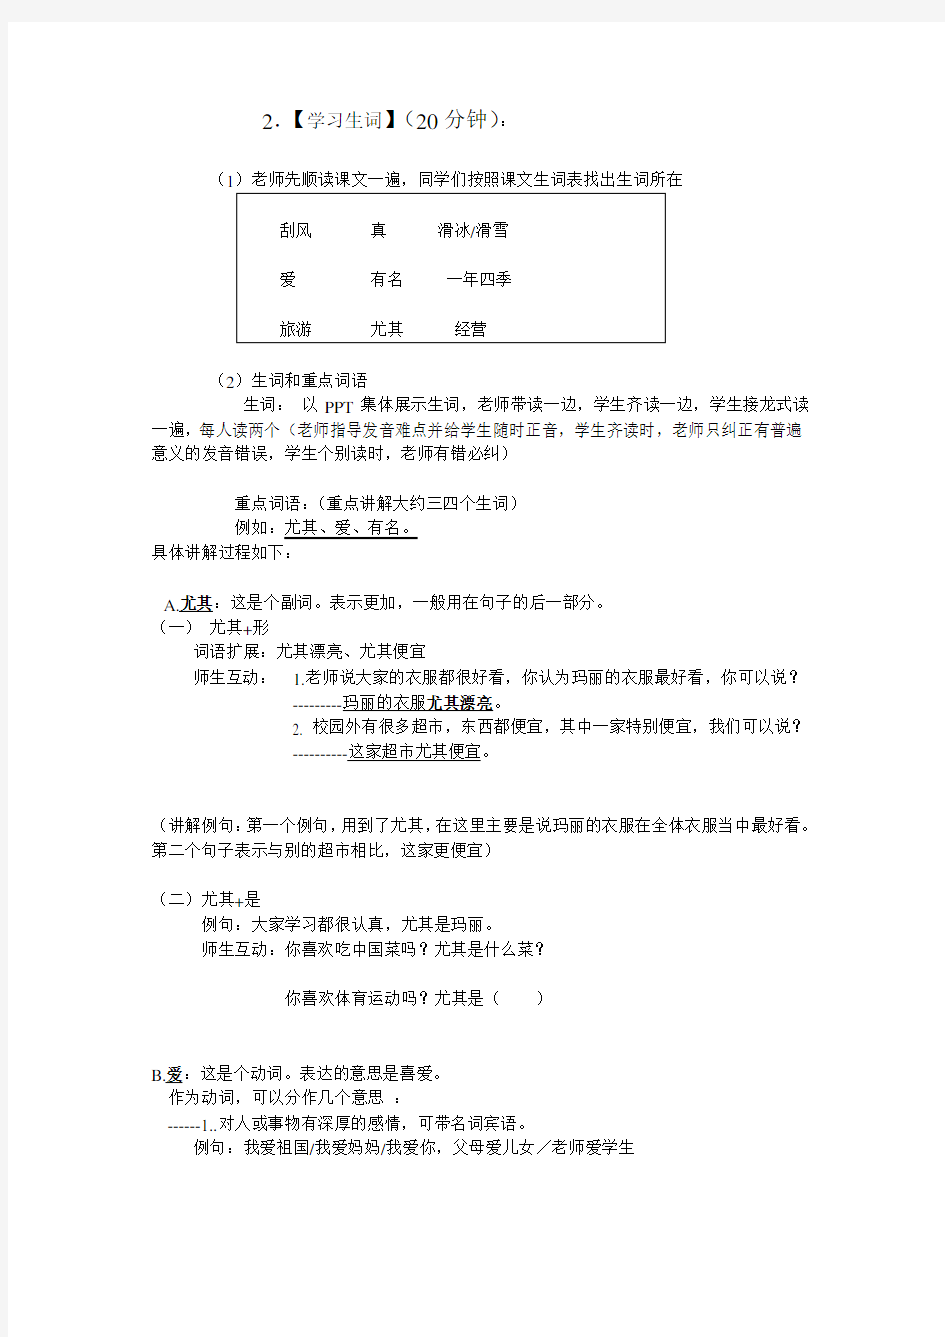 对外汉语综合课教案(初级)